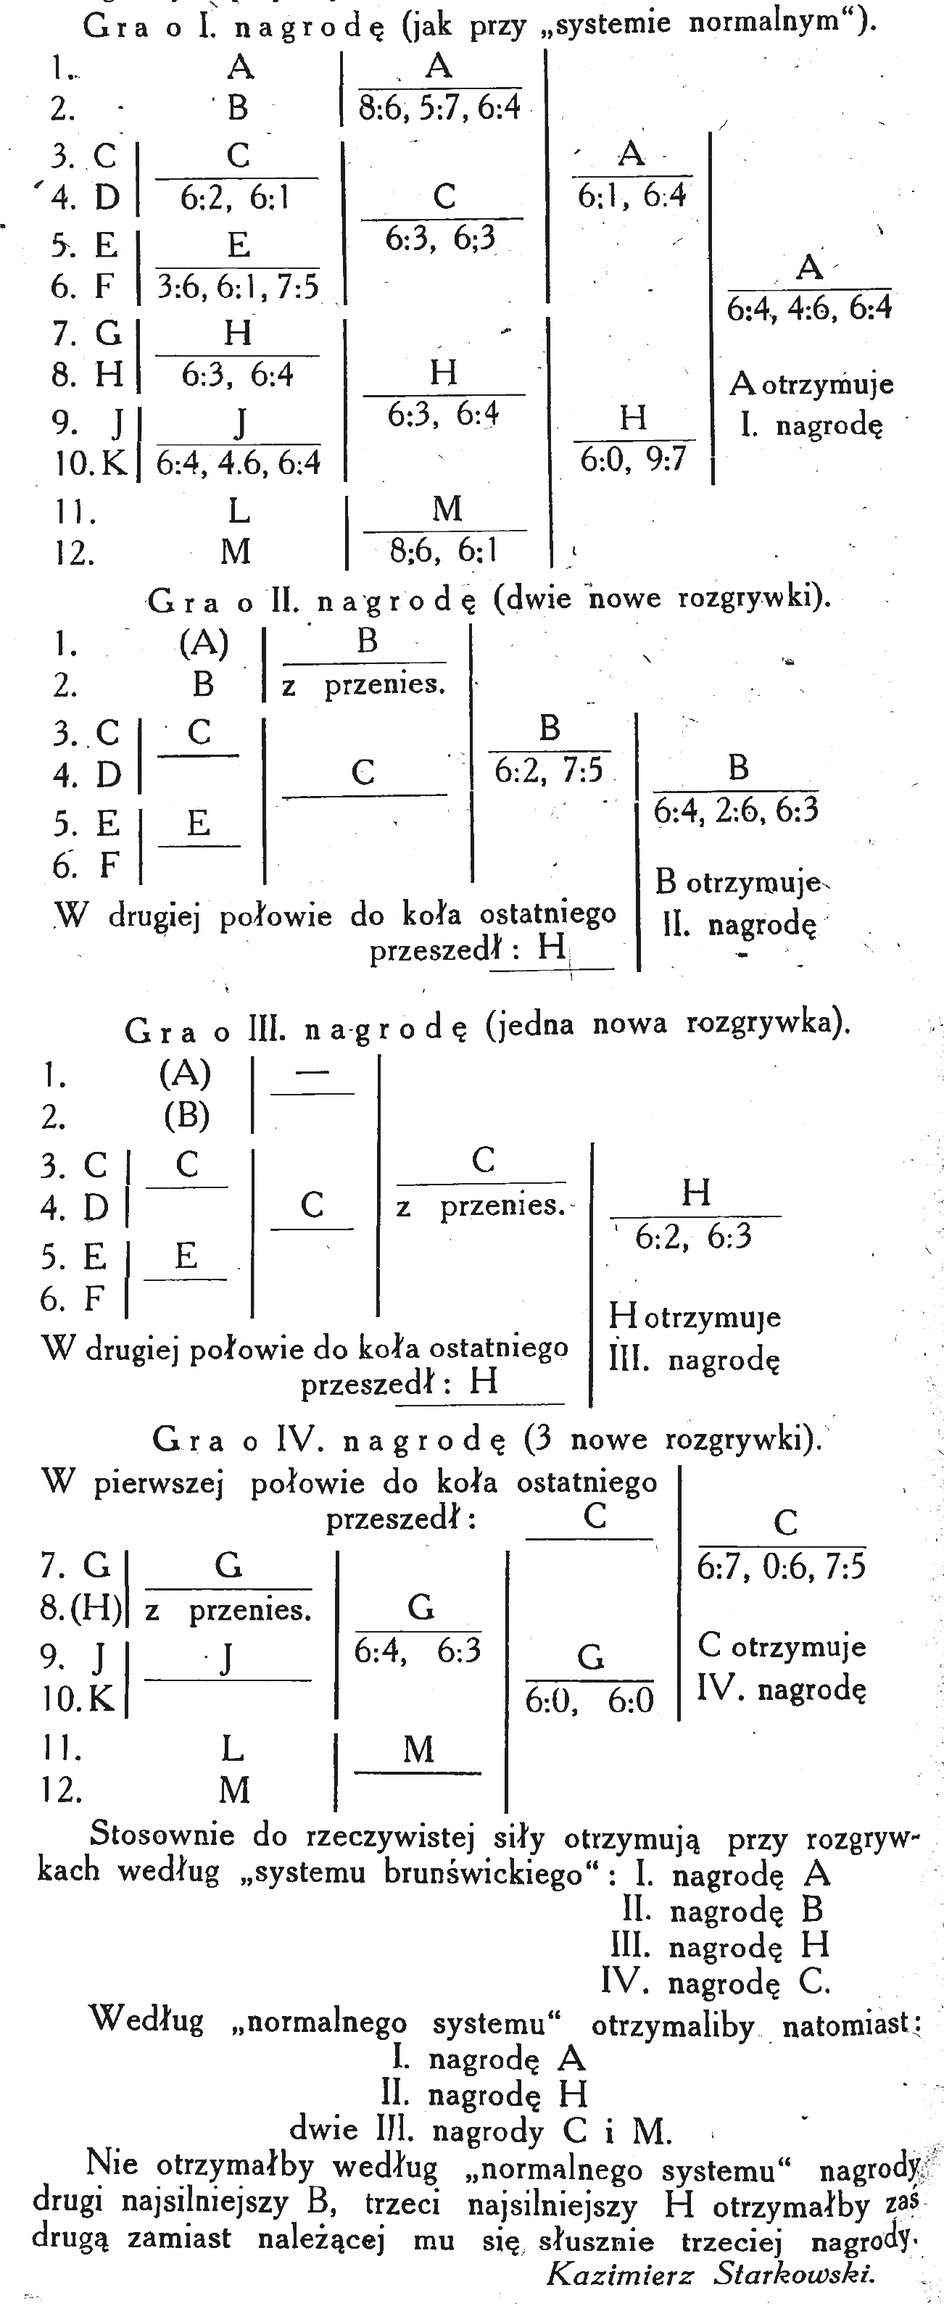 Graficzne przedstawienie systemu z 1923 r